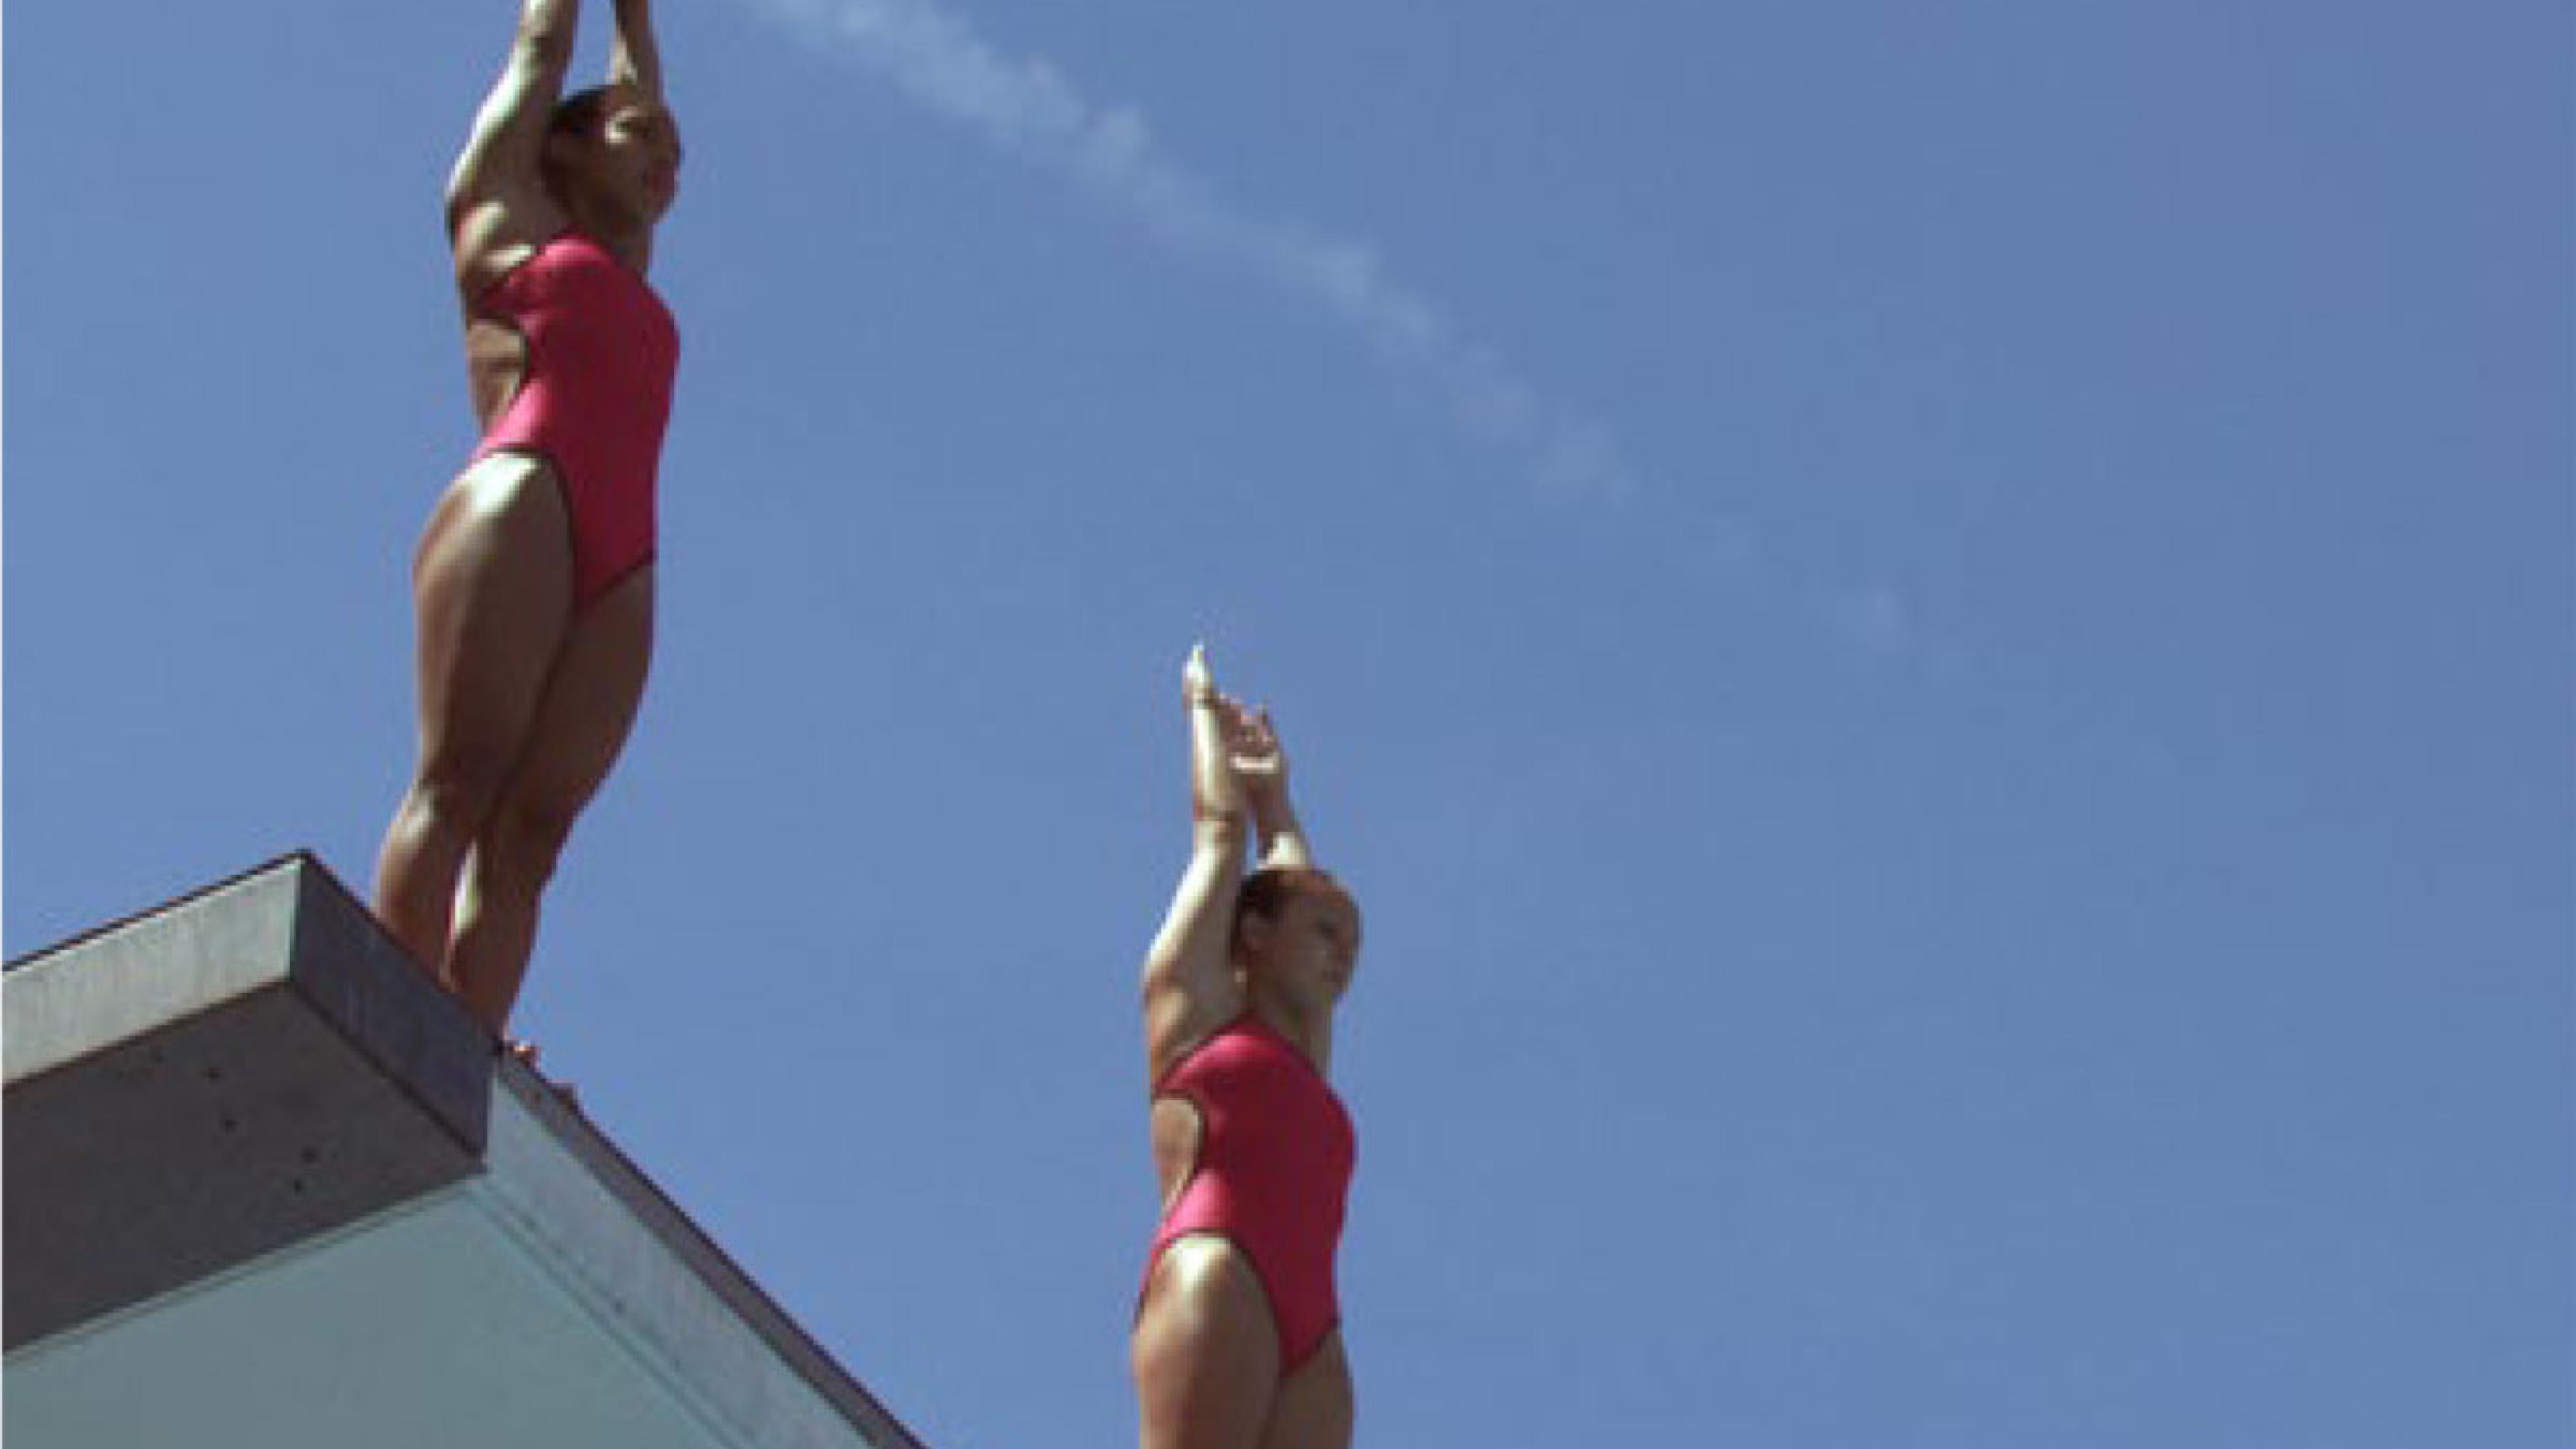 Zwei Frauen in roten Badeanzügen stehen bereit zum Absprung auf einem Sprungturm.